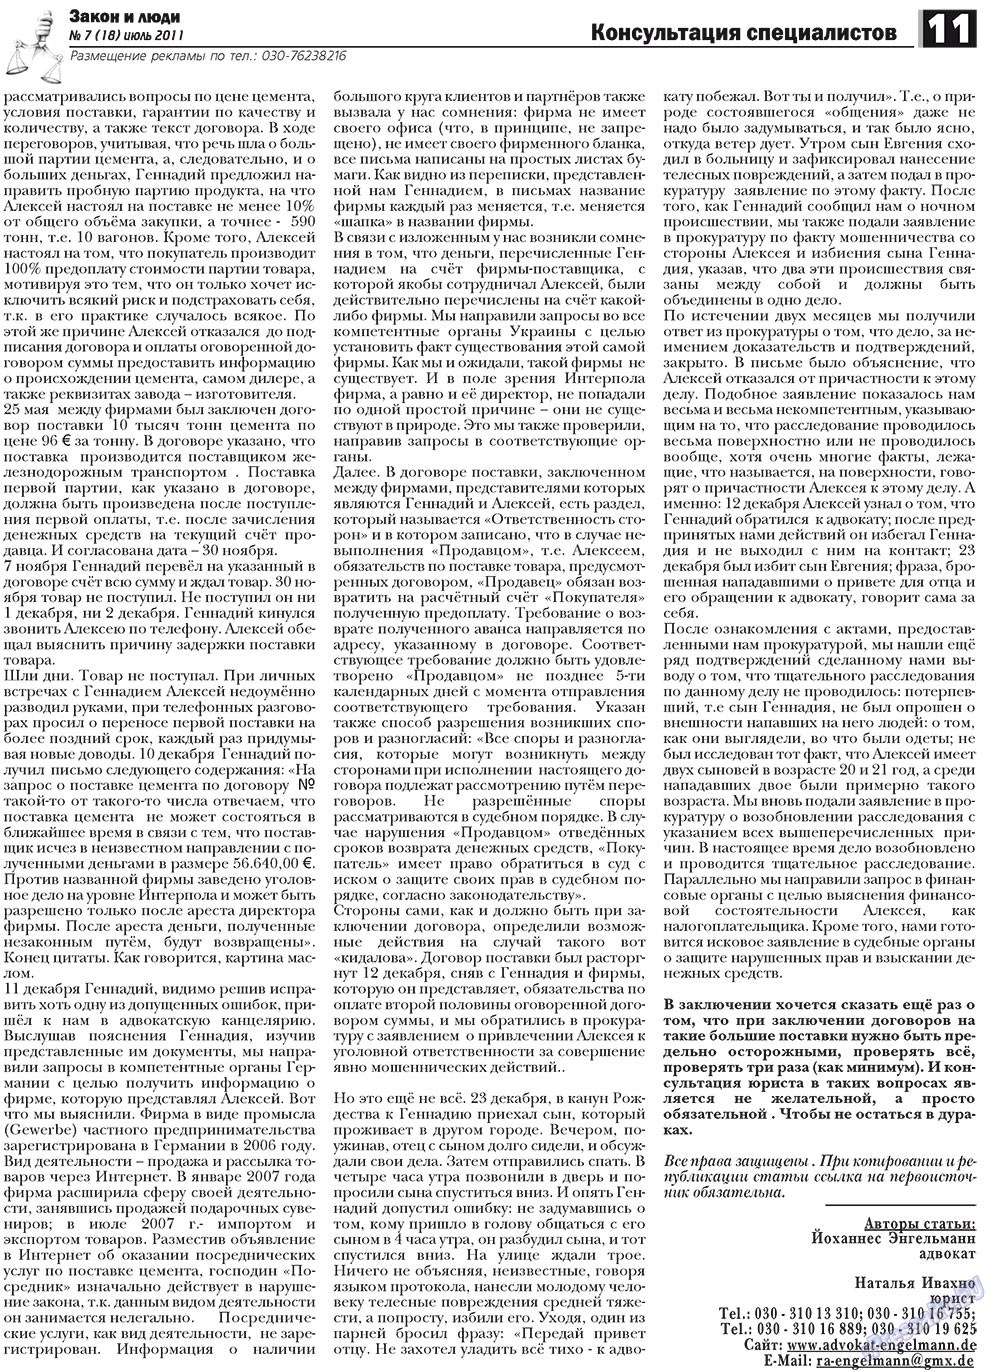 Закон и люди (газета). 2011 год, номер 7, стр. 11